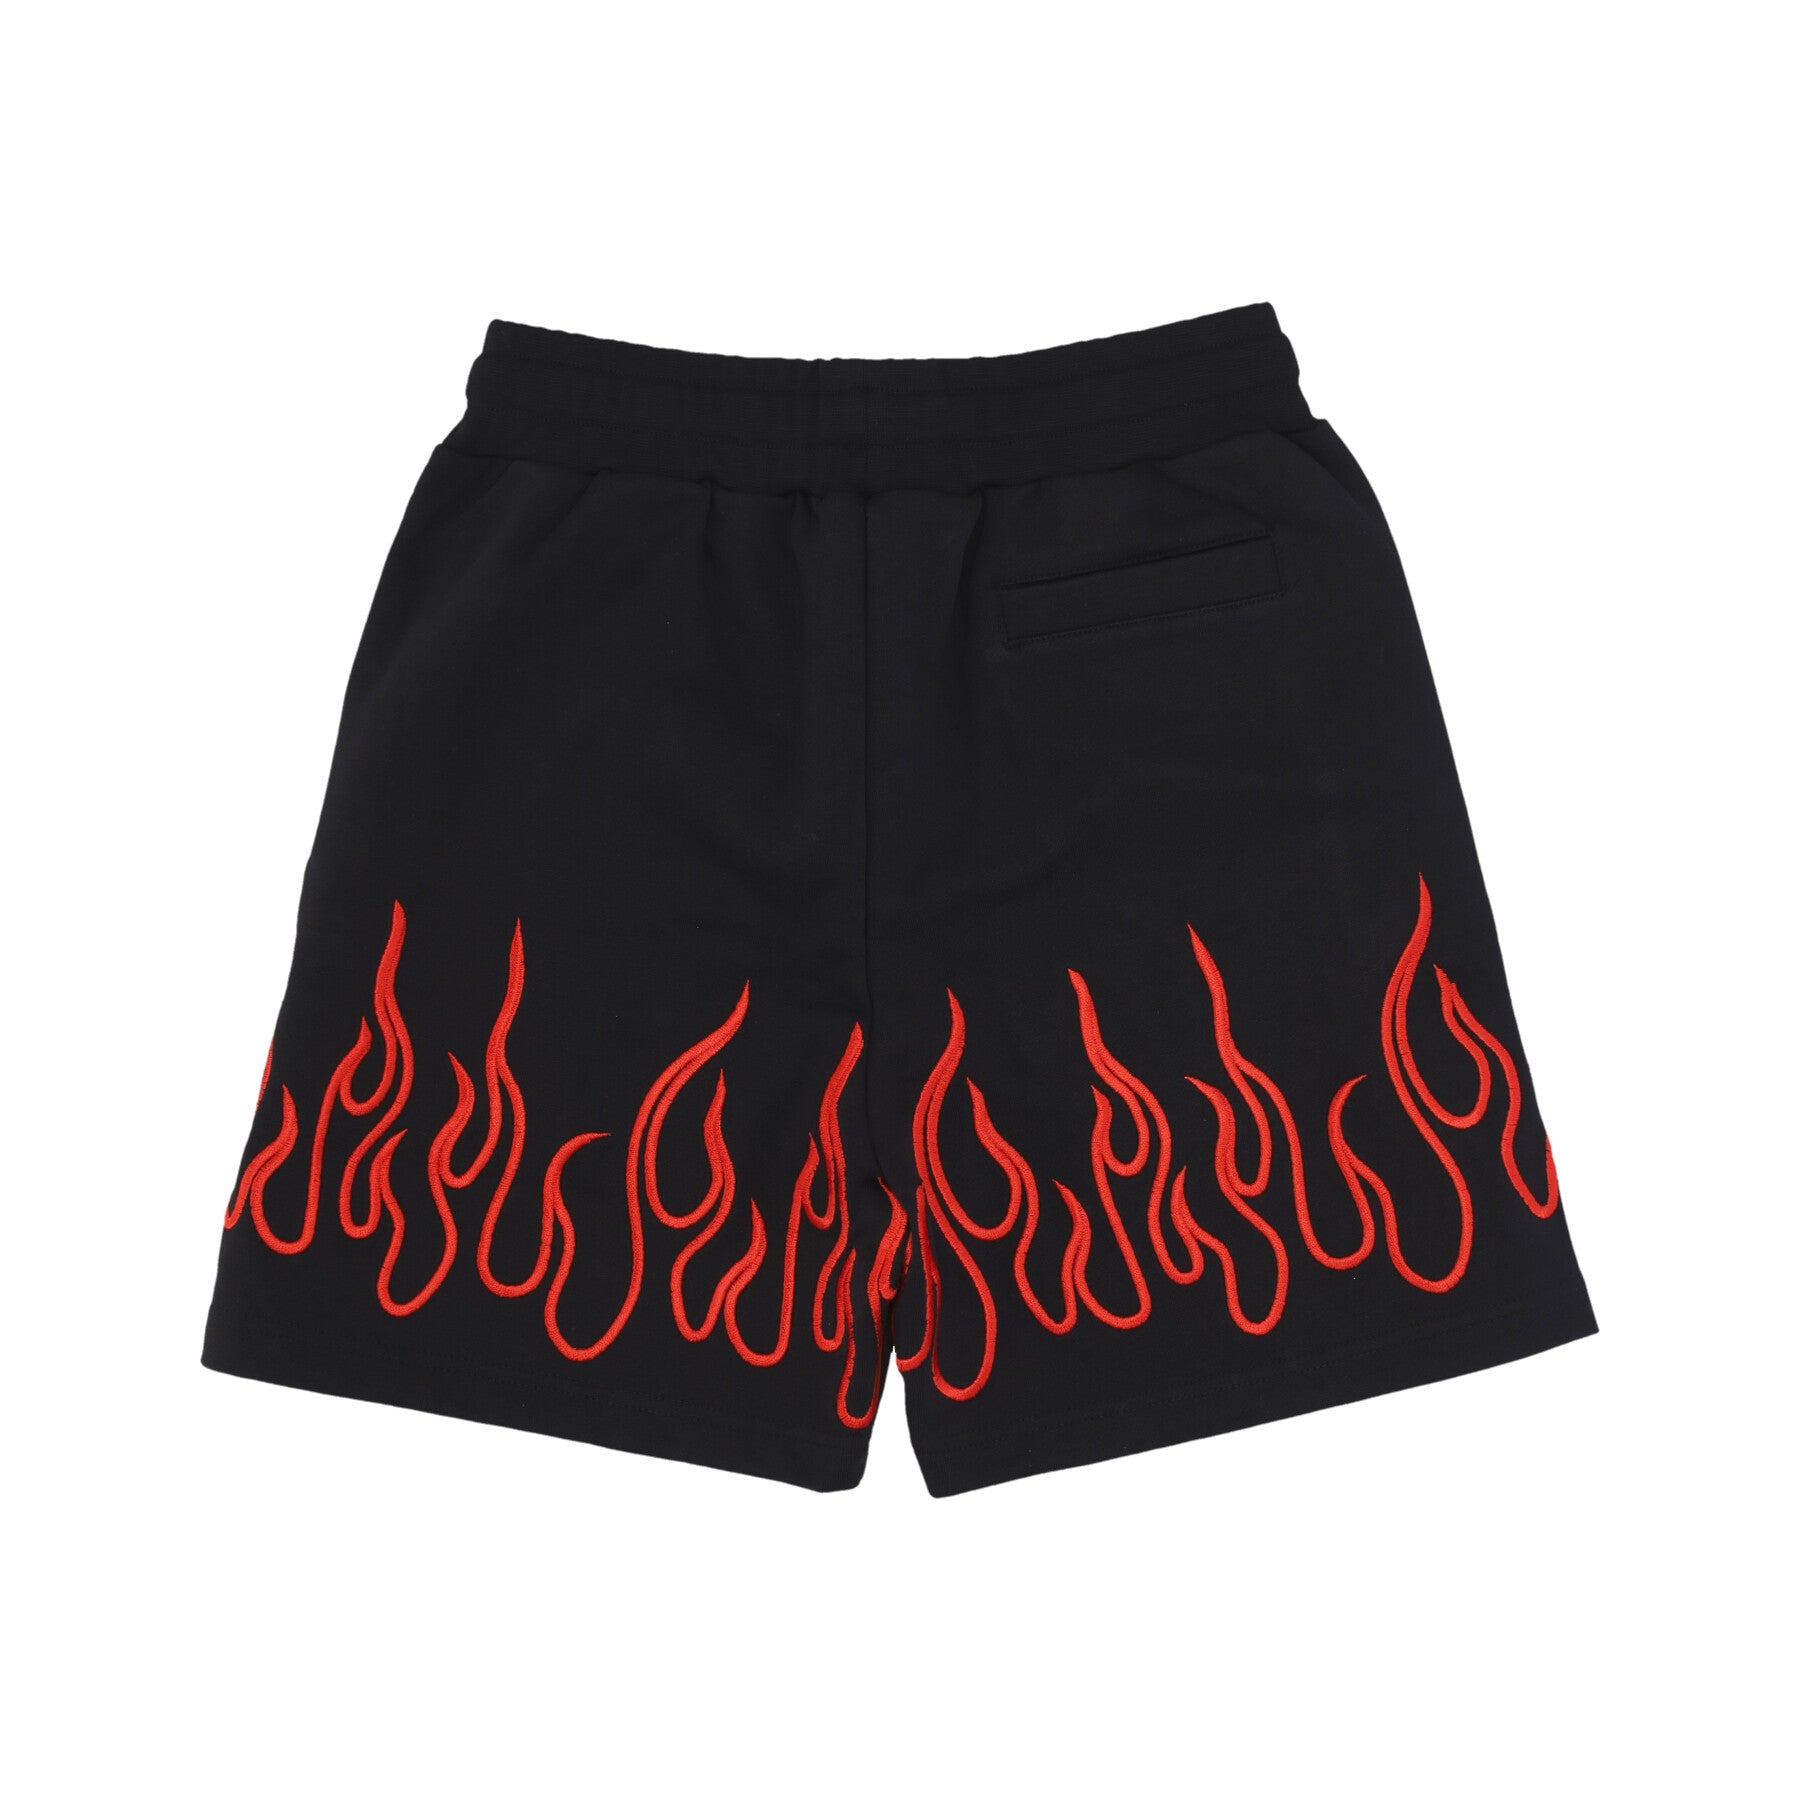 Pantalone Corto Tuta Uomo Embroidered Flames And Metal Label Shorts Black/red VS01165